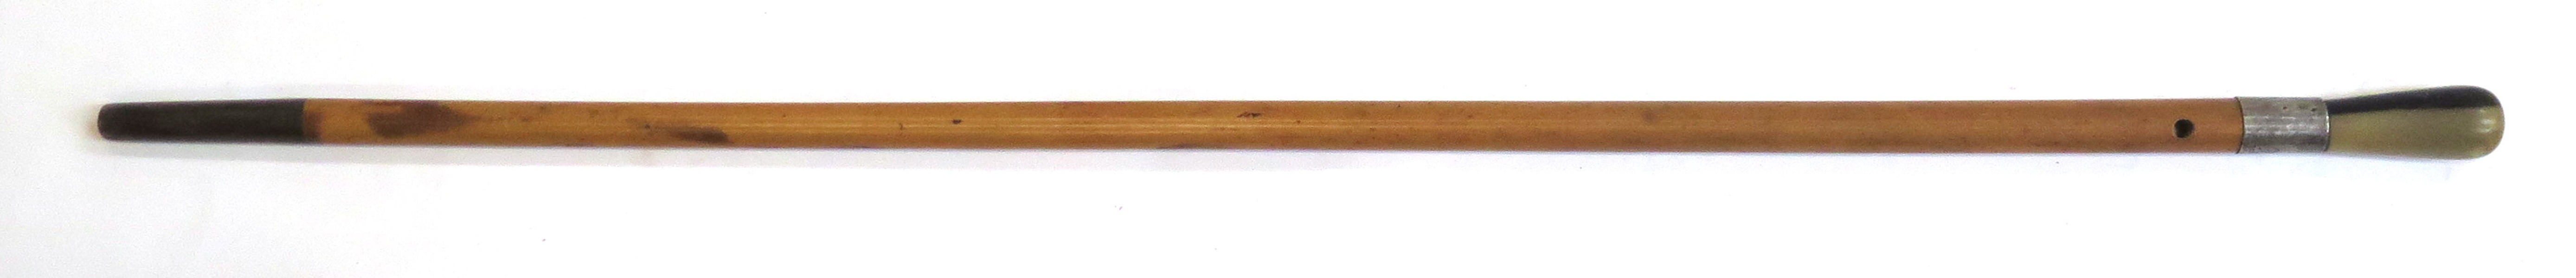 Käpp, bambu och horn med silverbeslag, 1900-talets 1 hälft, _16360a_lg.jpeg